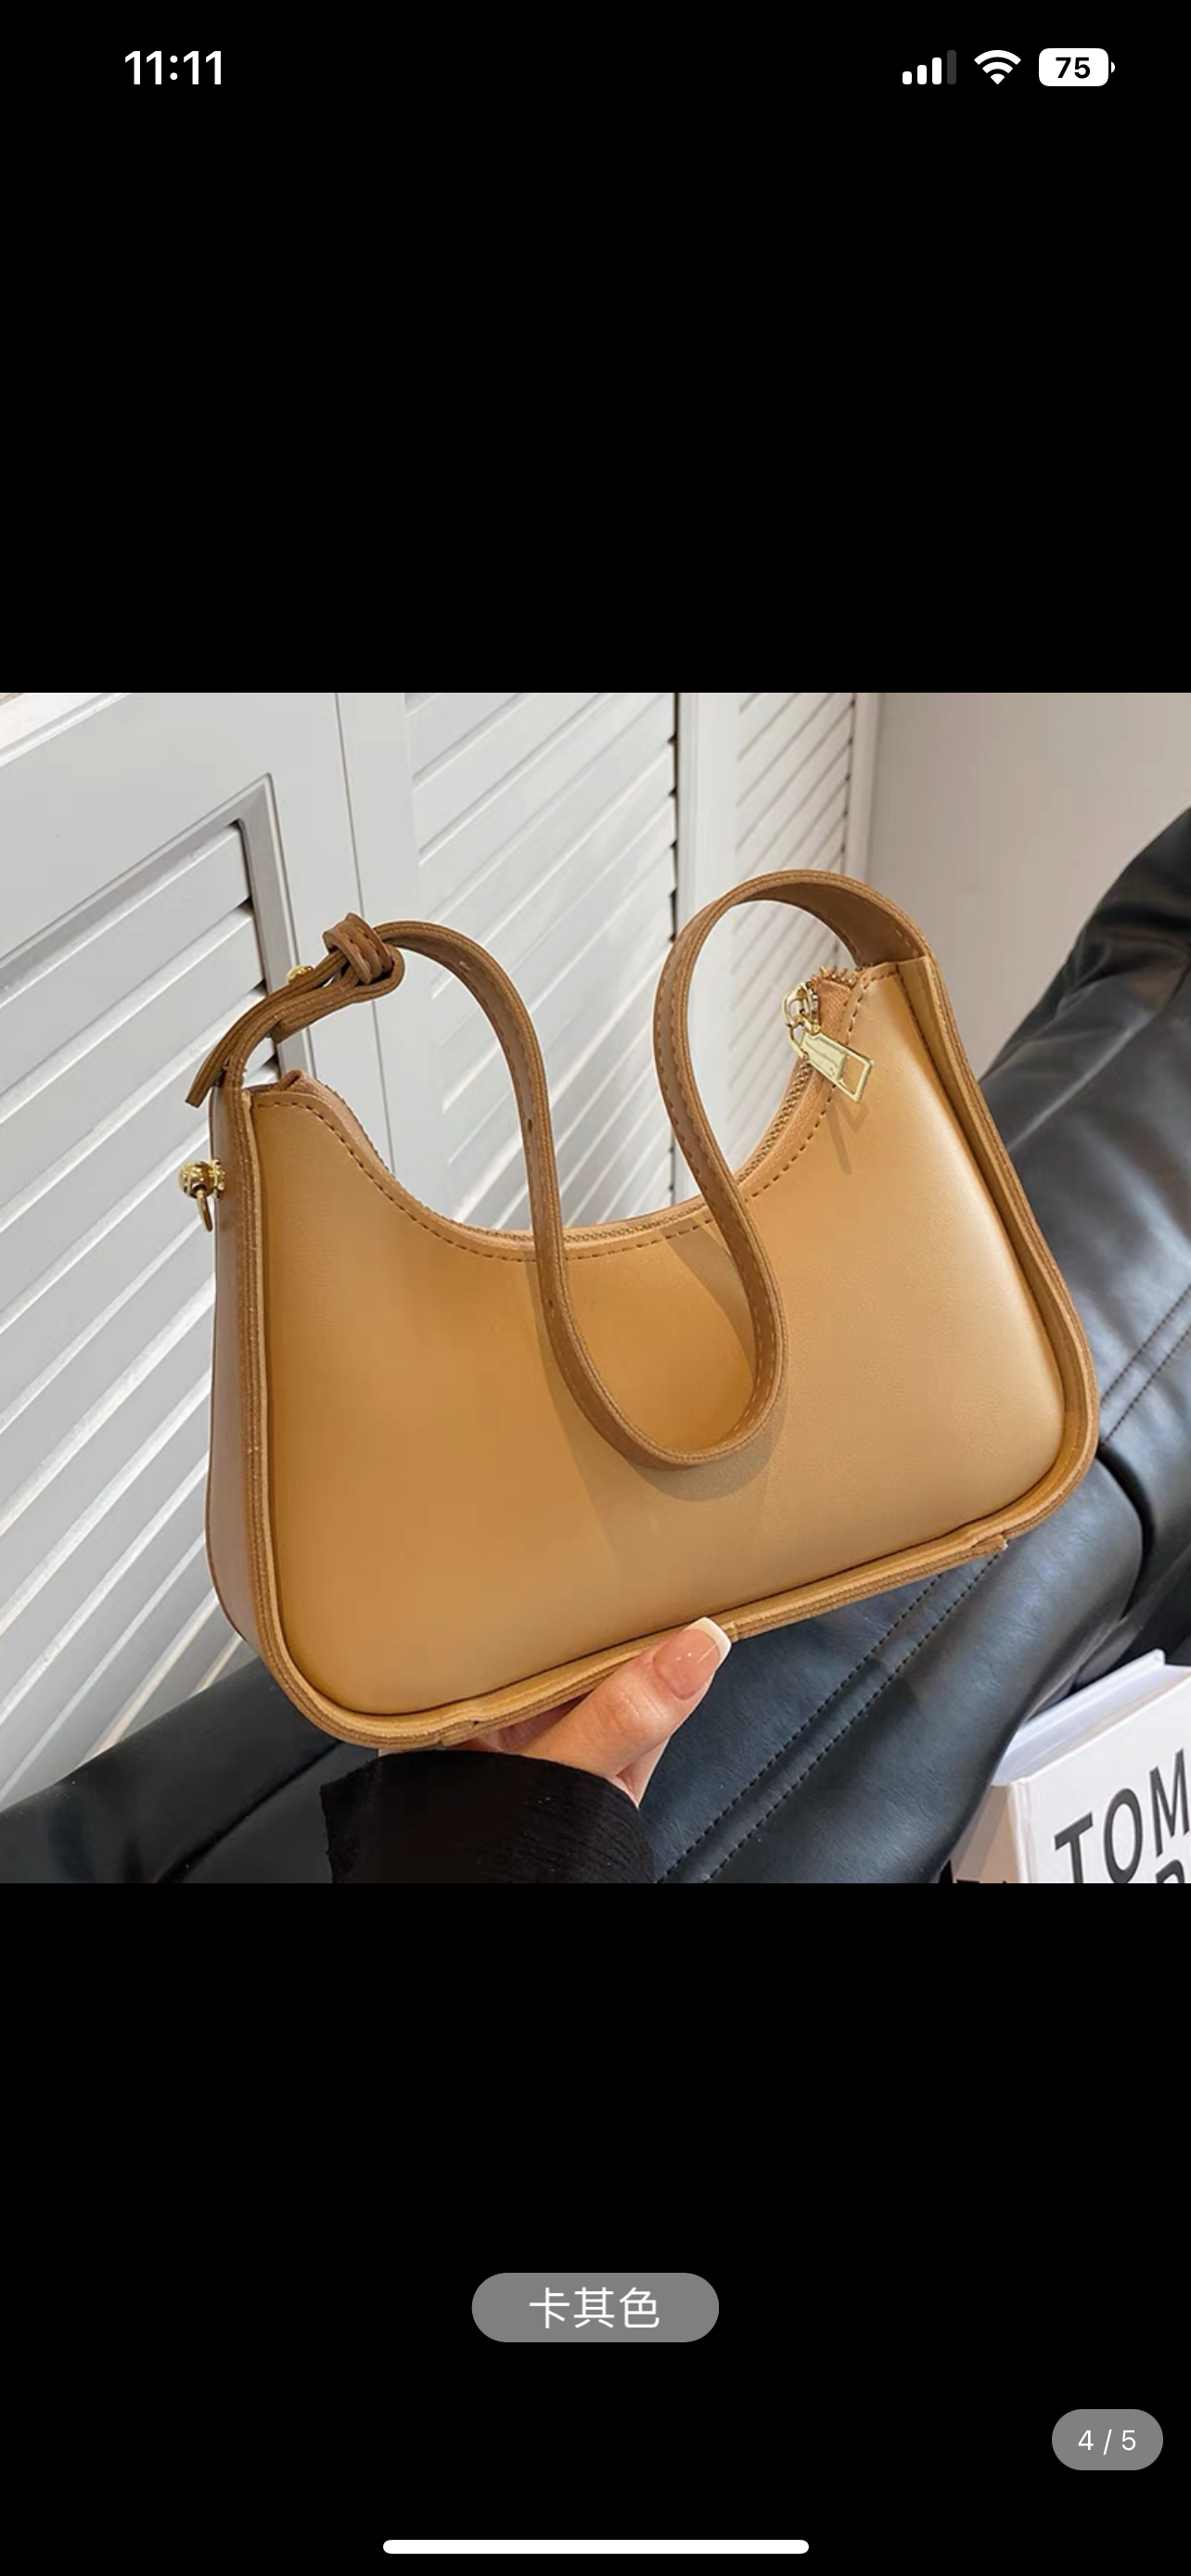 New Ladies Crescent Bag Fashion Versatile Texture Shoulder Bag,one-size